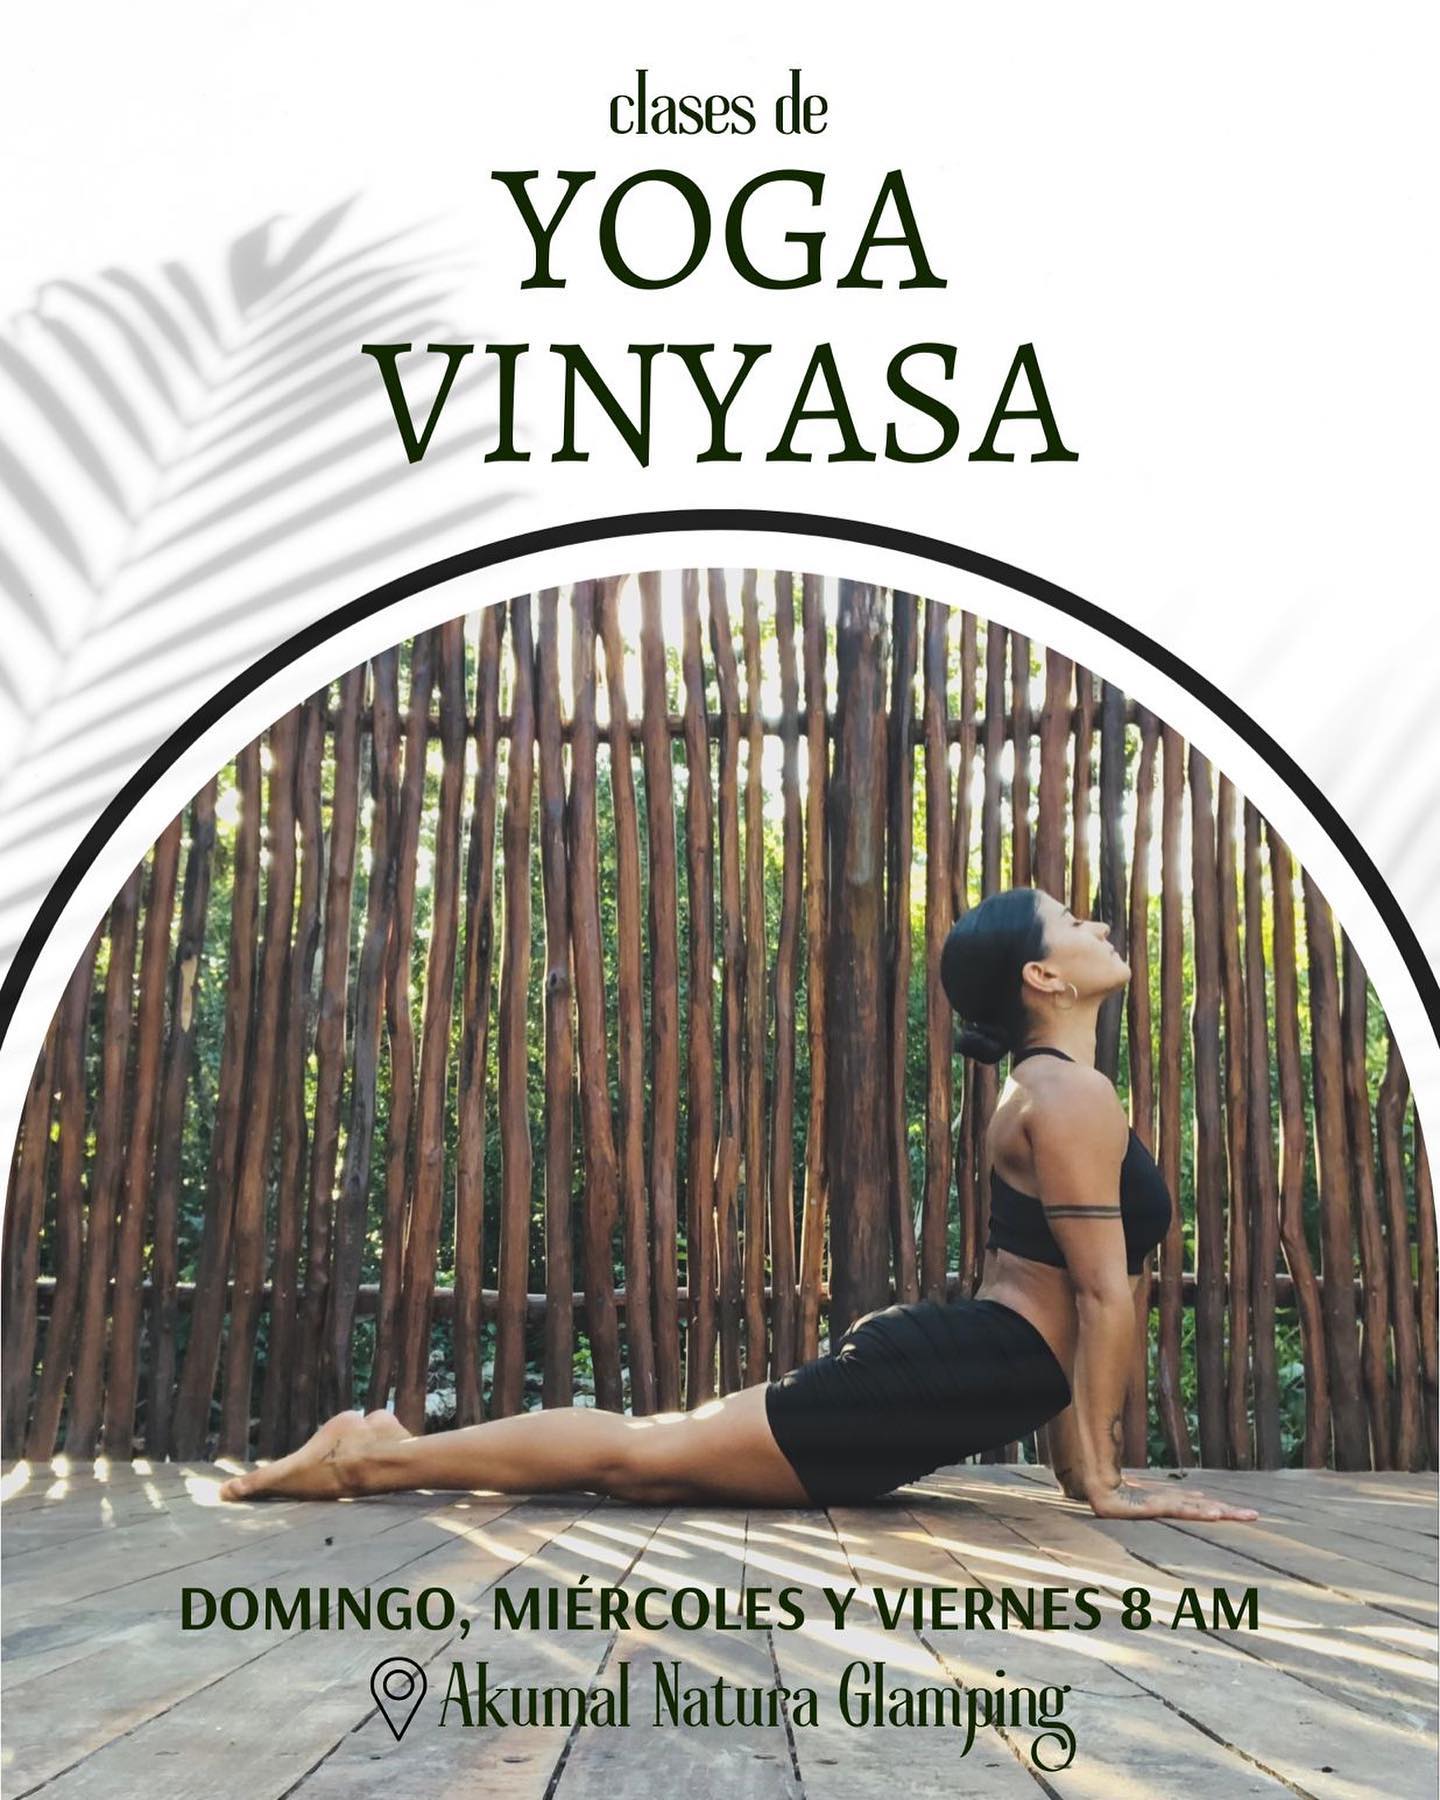 Yoga Vinyasa ✨

En esta clase iremos haciendo un recorrido desde la quietud y la escucha activa del cuerpo, hasta el movimiento fluido de asanas (posturas) de yoga, creando sincronía entre respiración y movimiento.

A través del registro de las sensaciones, flexibilizamos, habilitamos y fortalecemos nuestro cuerpo físico, entrando en coherencia con nuestra mente y nuestro espíritu. 

Reserva: reservations@akumalnatura.com 

.
#yoga #yogavinyasa #wellness #yogaenakumal